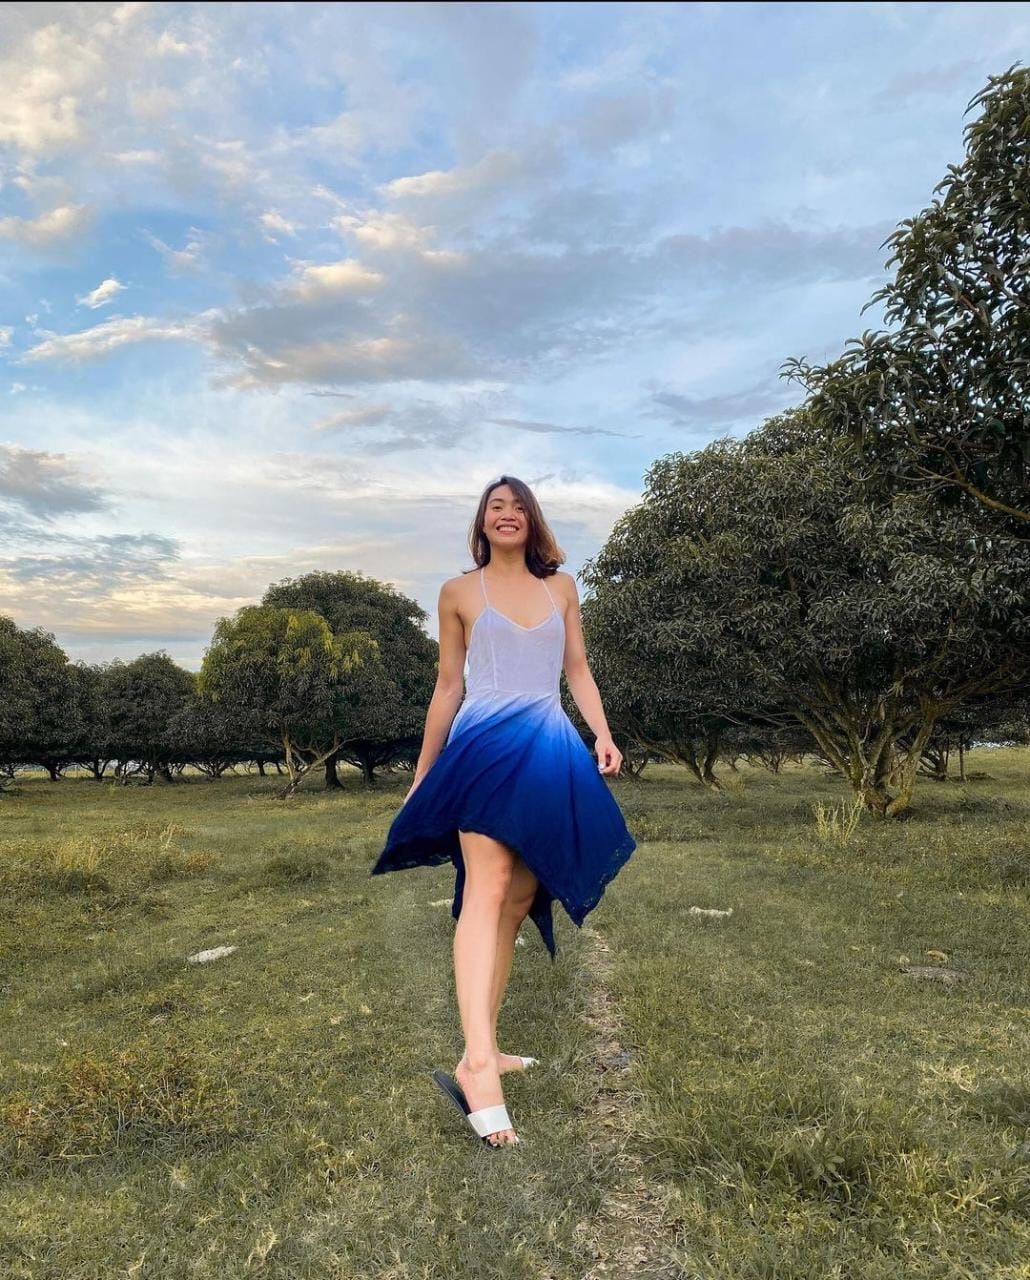 Abigail Marano/Instagram @abymarano